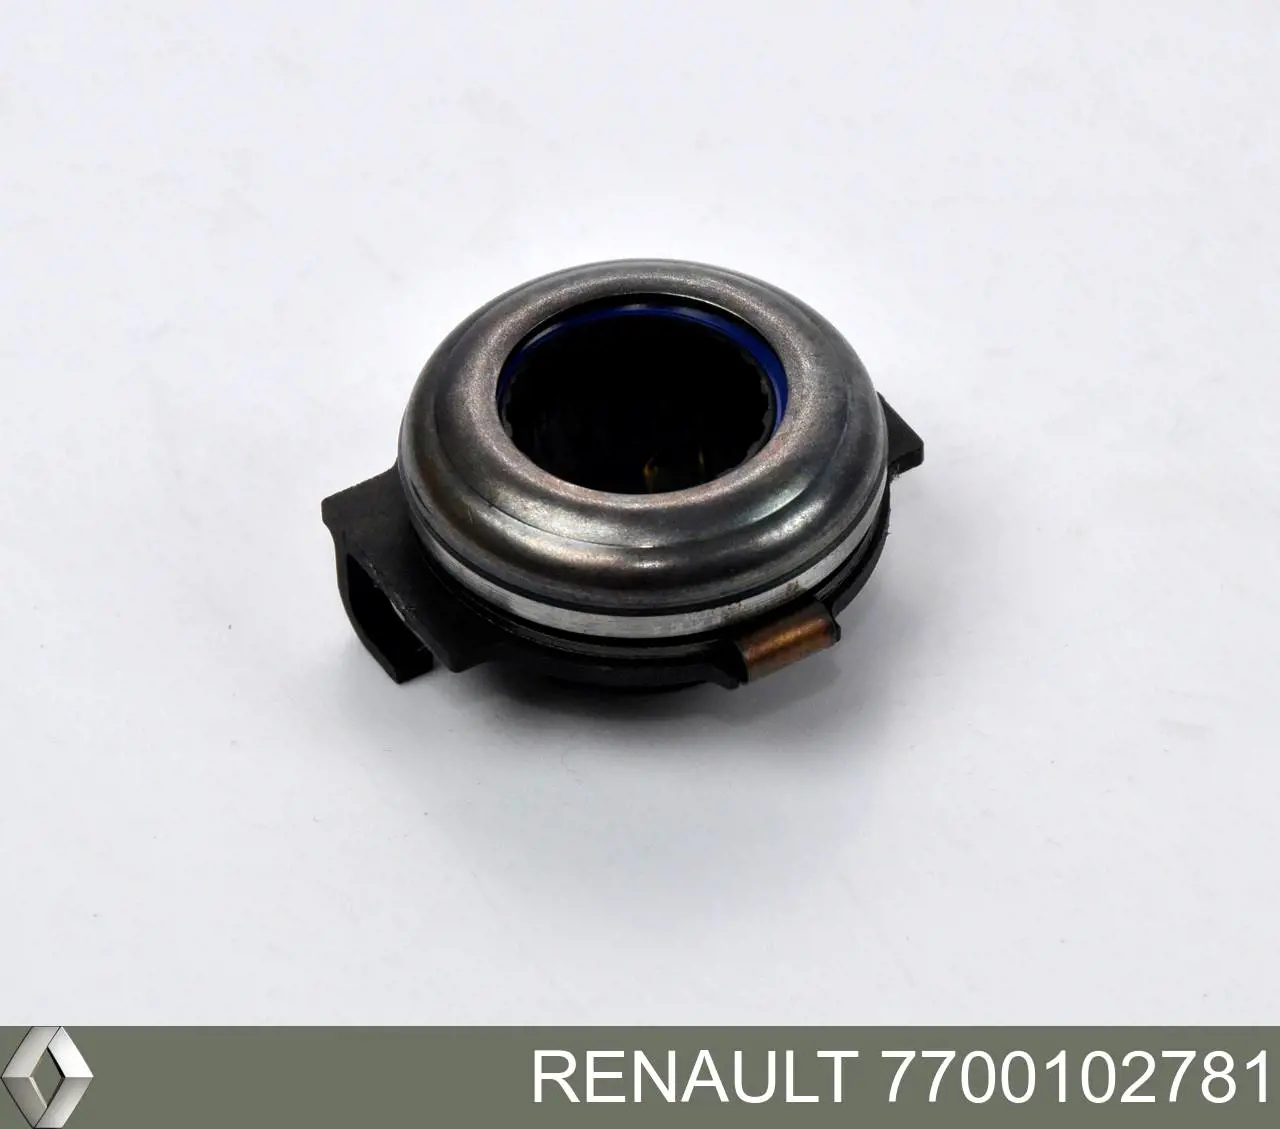 Подшипник сцепления выжимной Renault (RVI) 7700102781